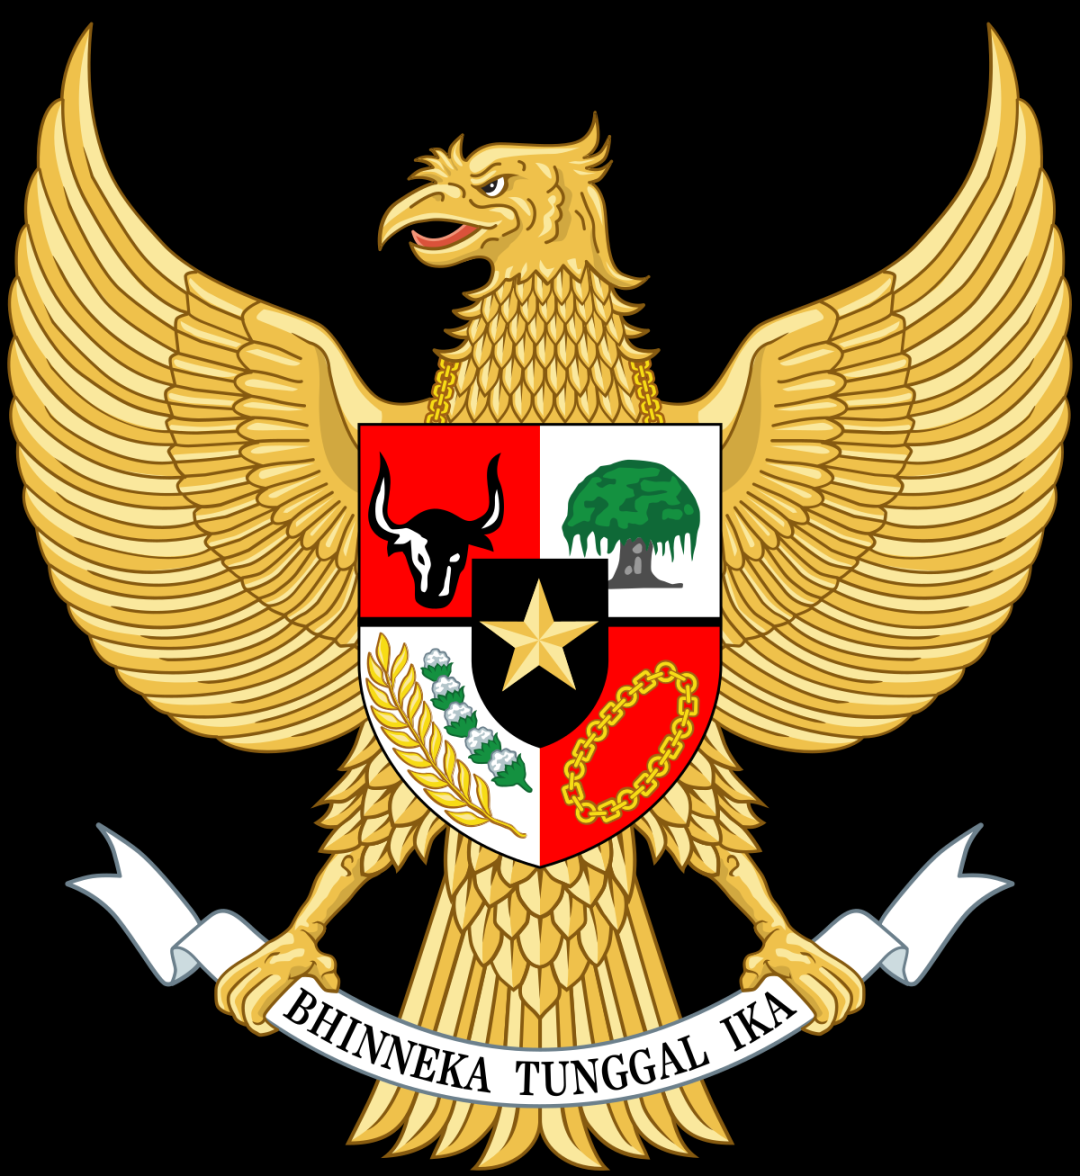 Lambang negara Indonesia - Wikipedia bahasa Indonesia